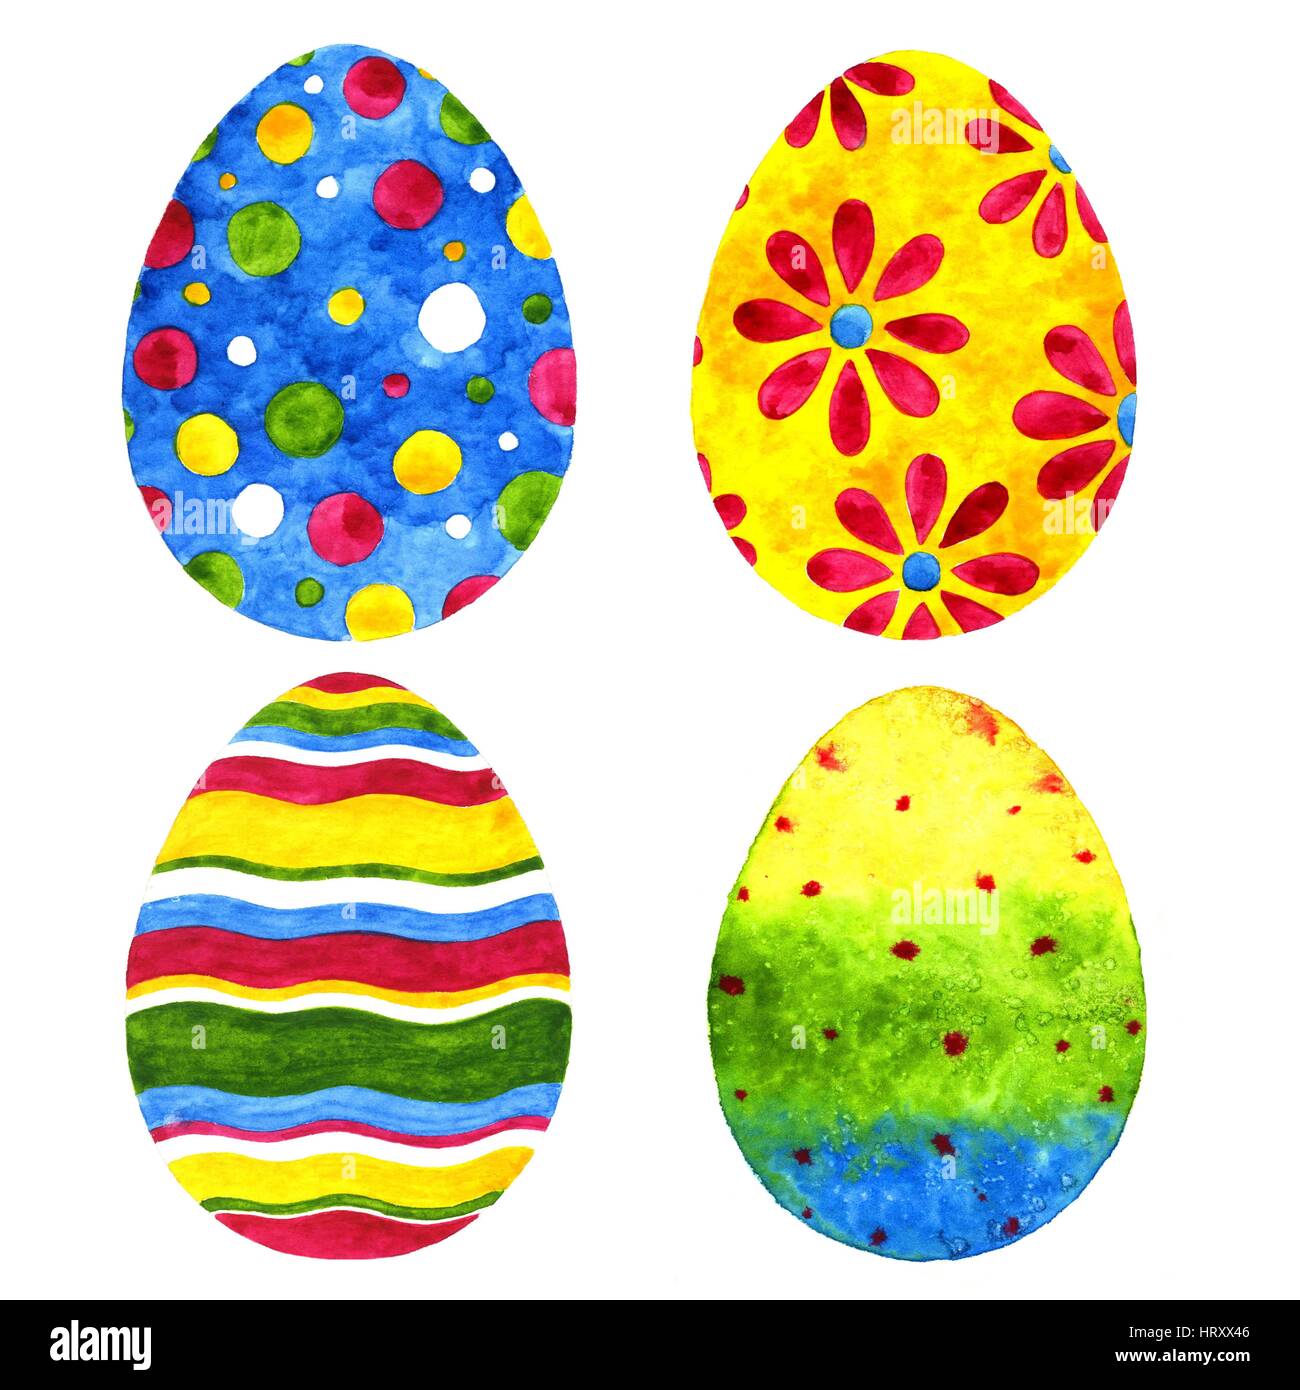 Les oeufs de Pâques. Illustration à l'aquarelle sur fond blanc Banque D'Images